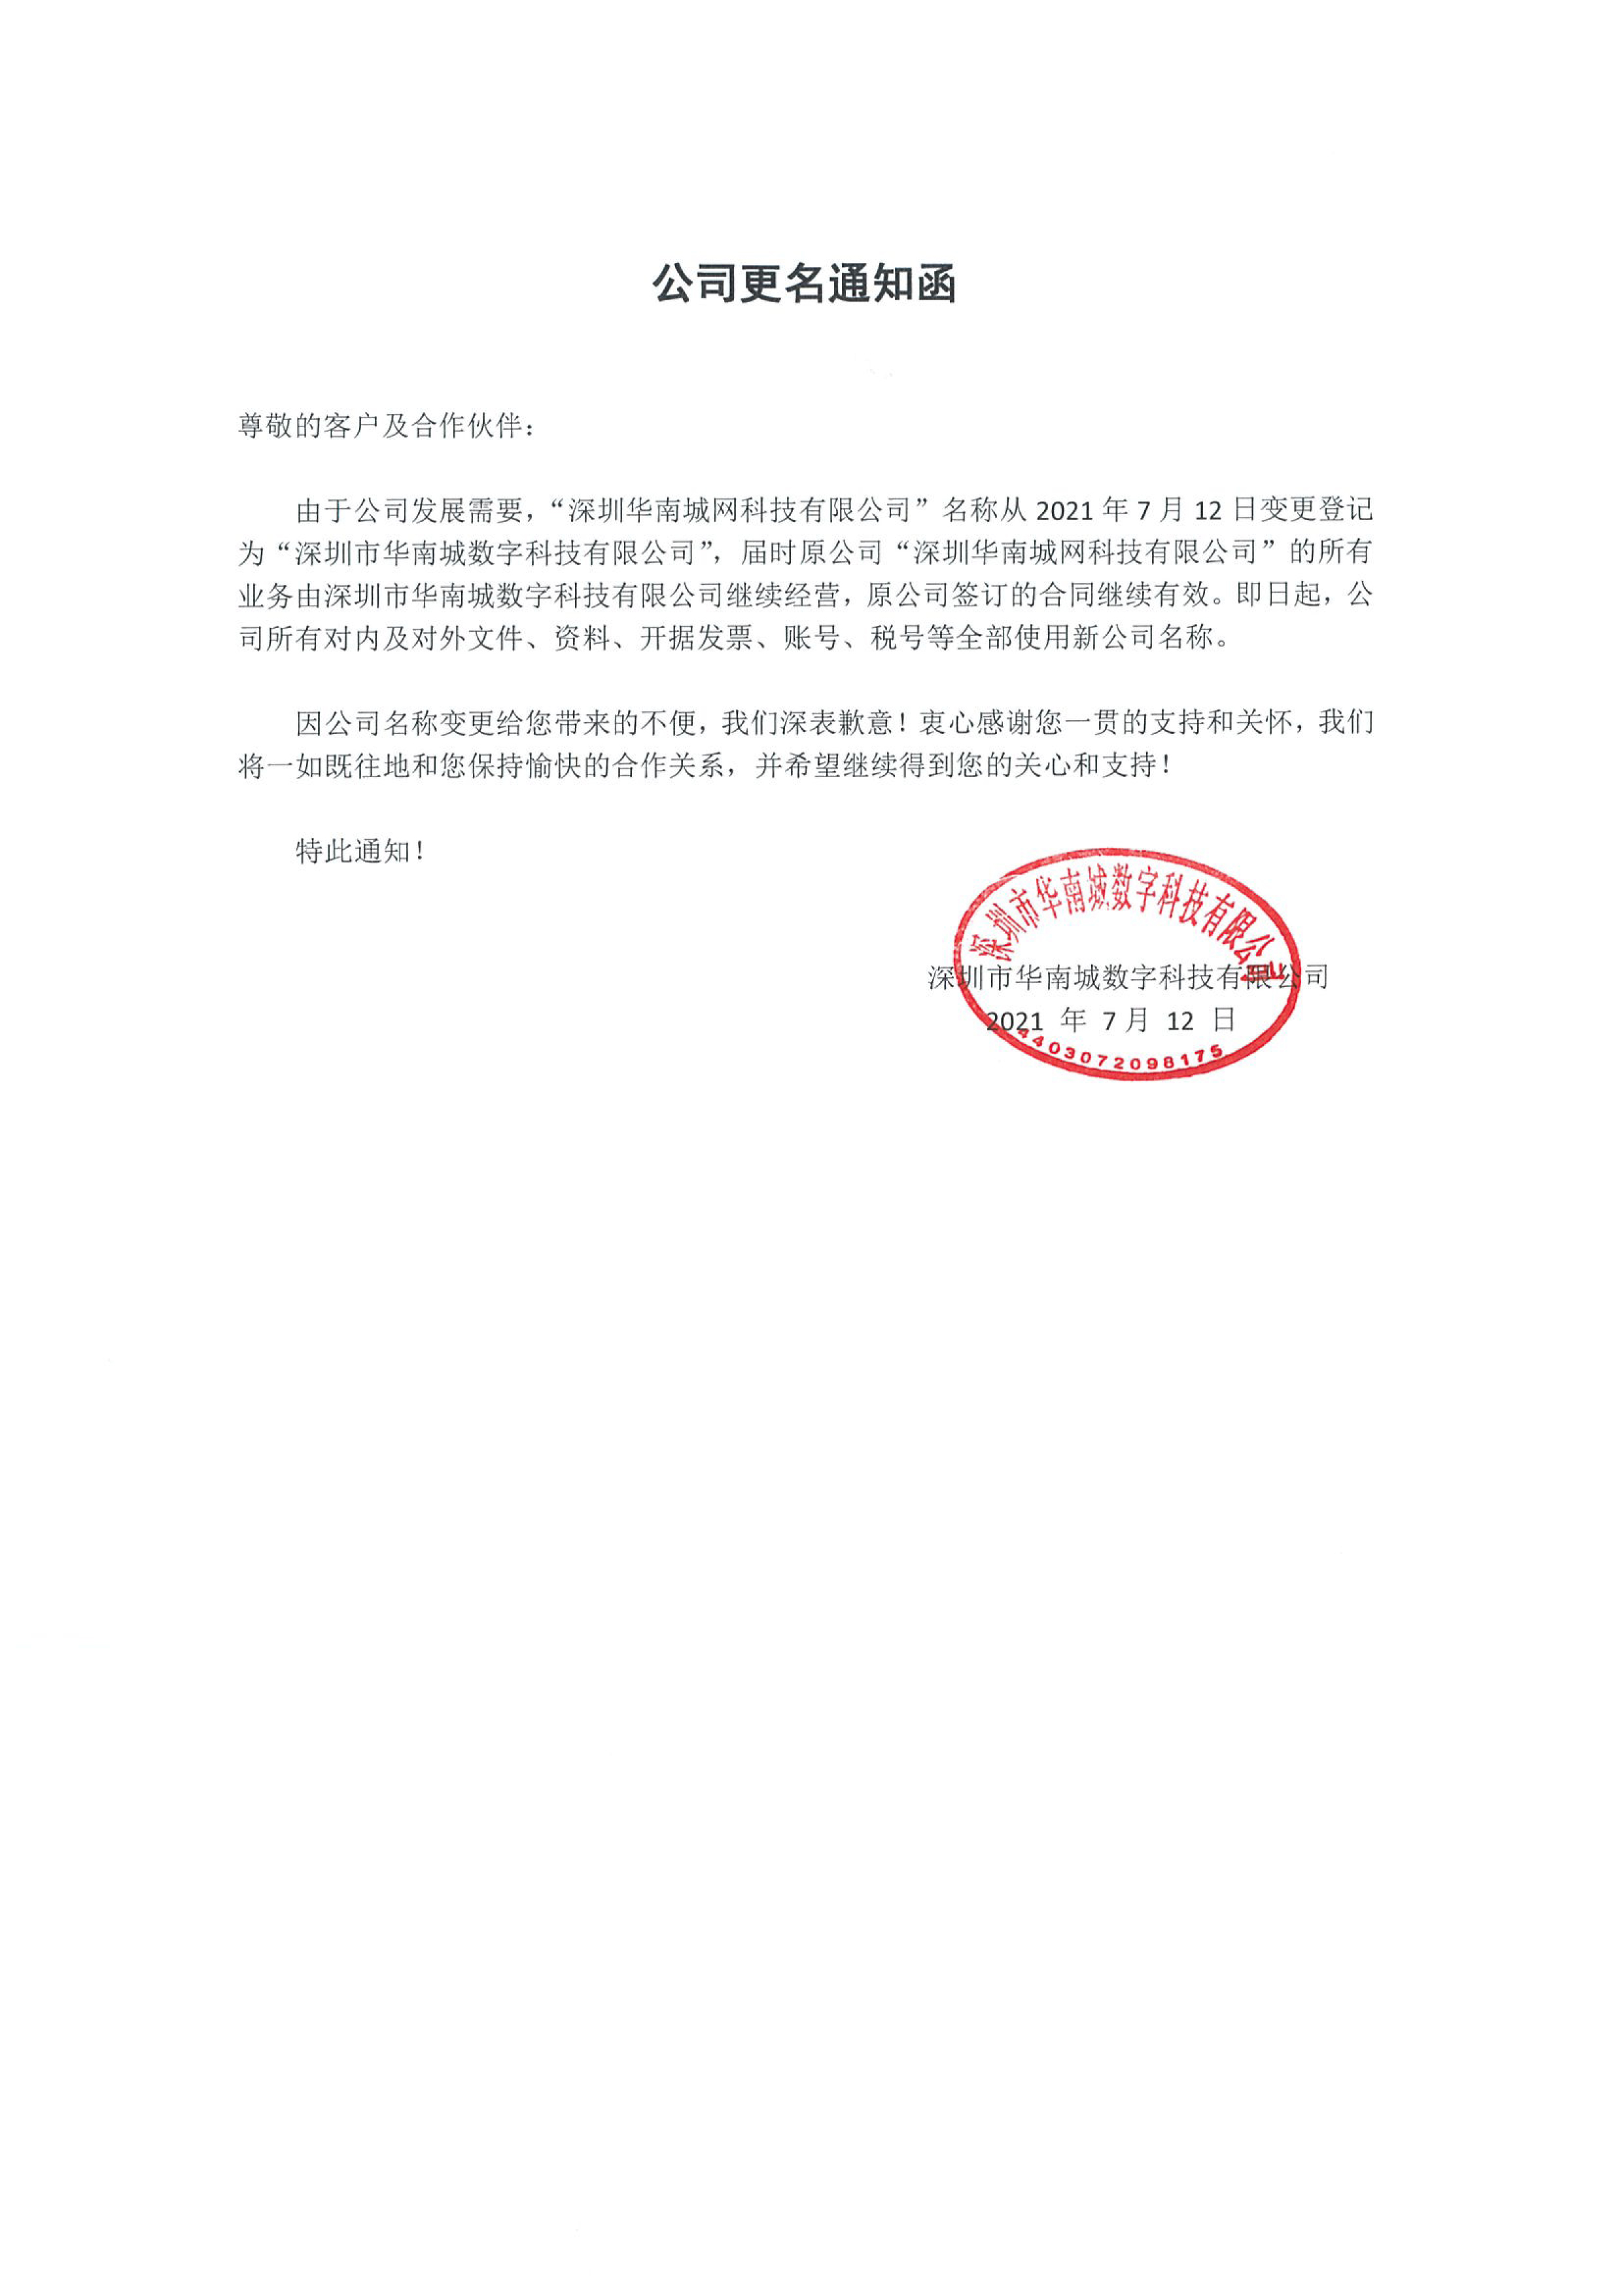 深圳华南城网科技有限公司更名通知